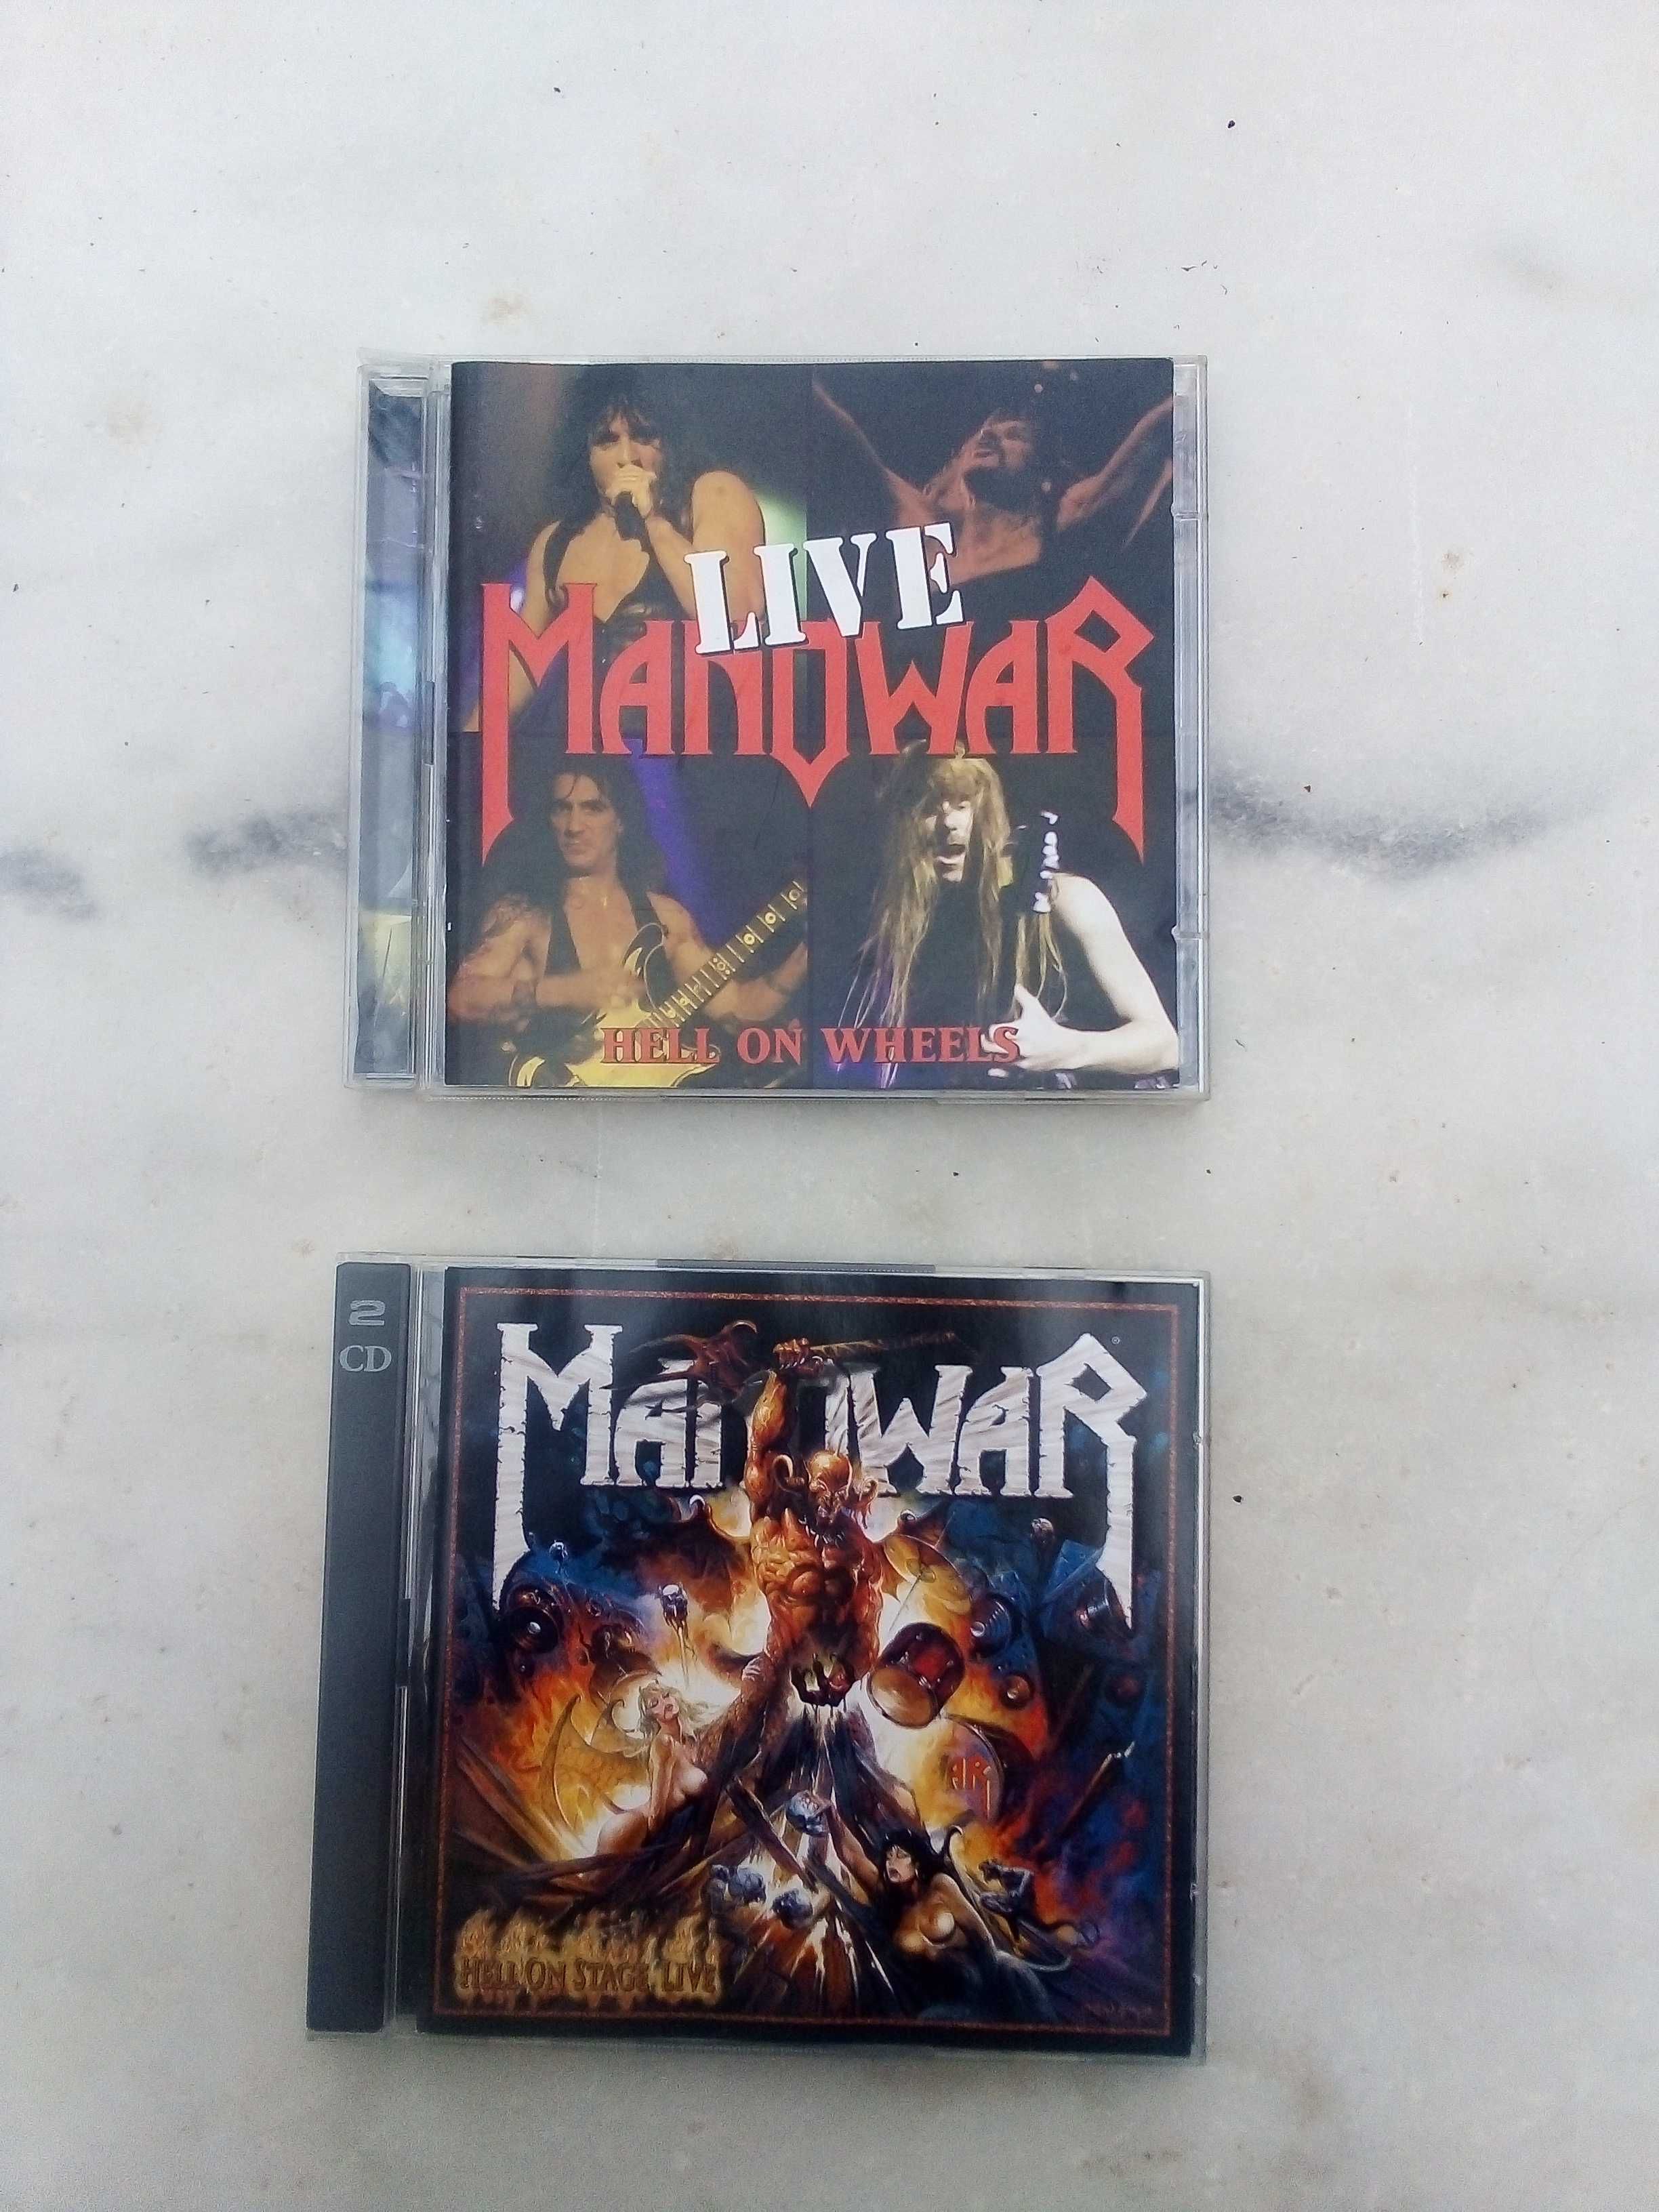 Manowar - Live in Portugal com entrada do concerto